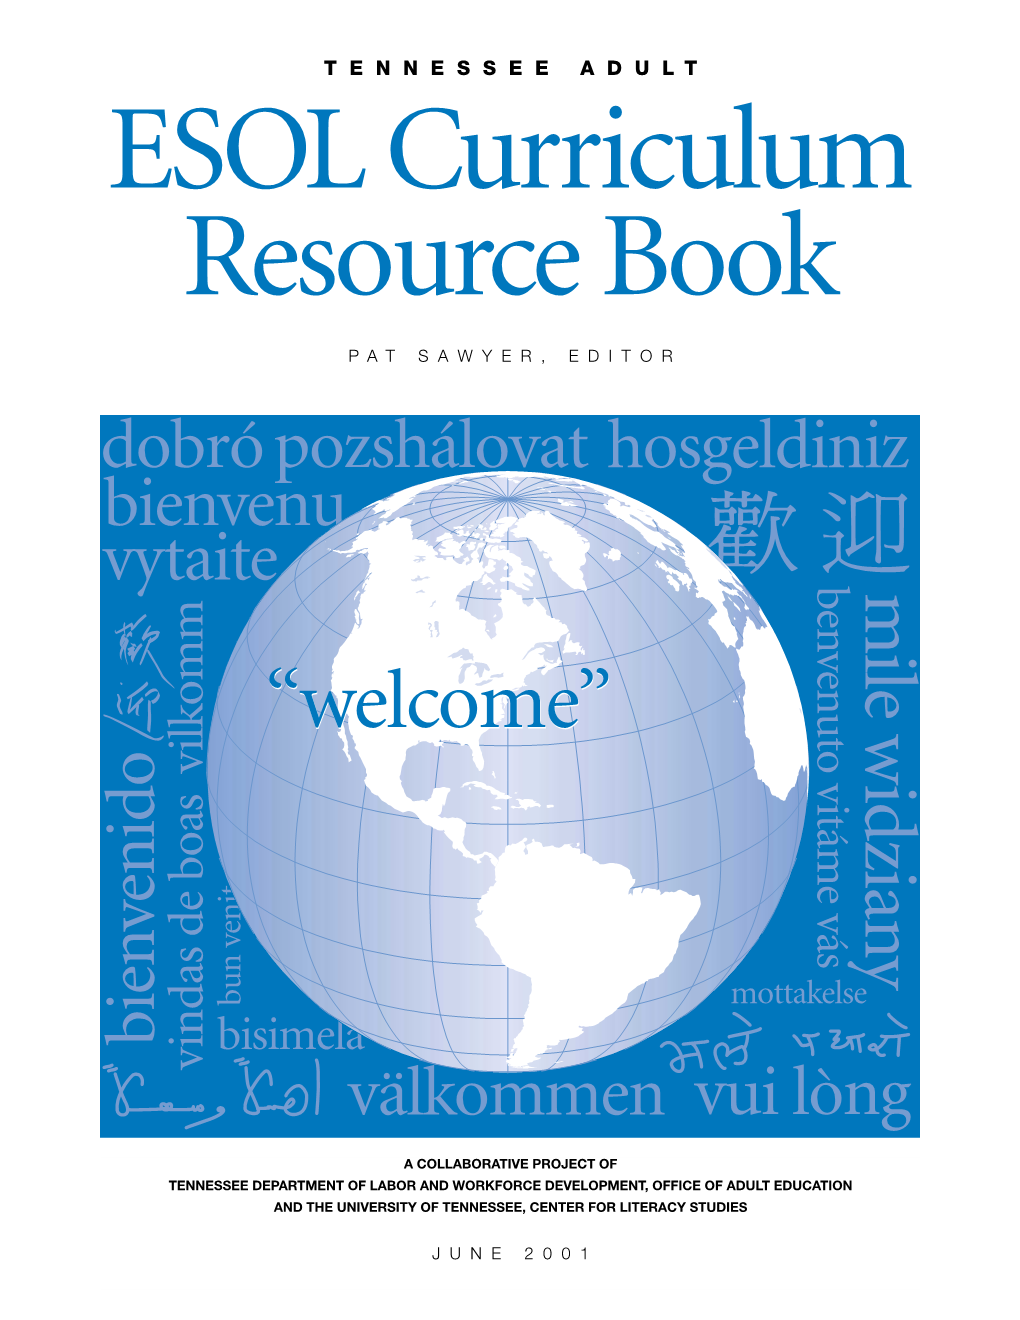 ESOL Curriculum Resource Book